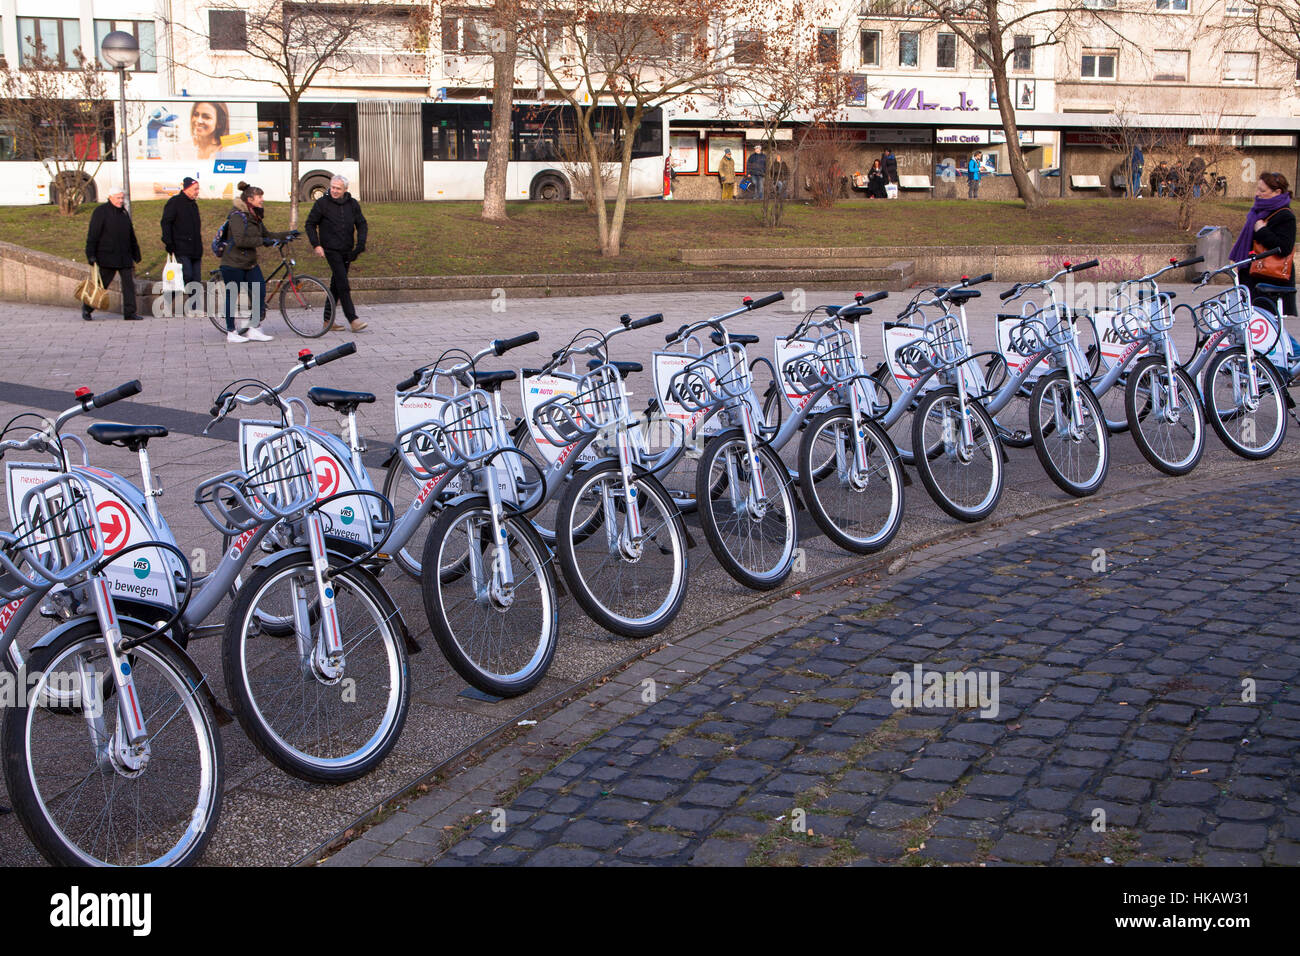 Alemania, Colonia, alquiler de bicicletas de la empresa Koelner Verkehrsbetriebe KVB (compañía de transporte público de Colonia) Foto de stock